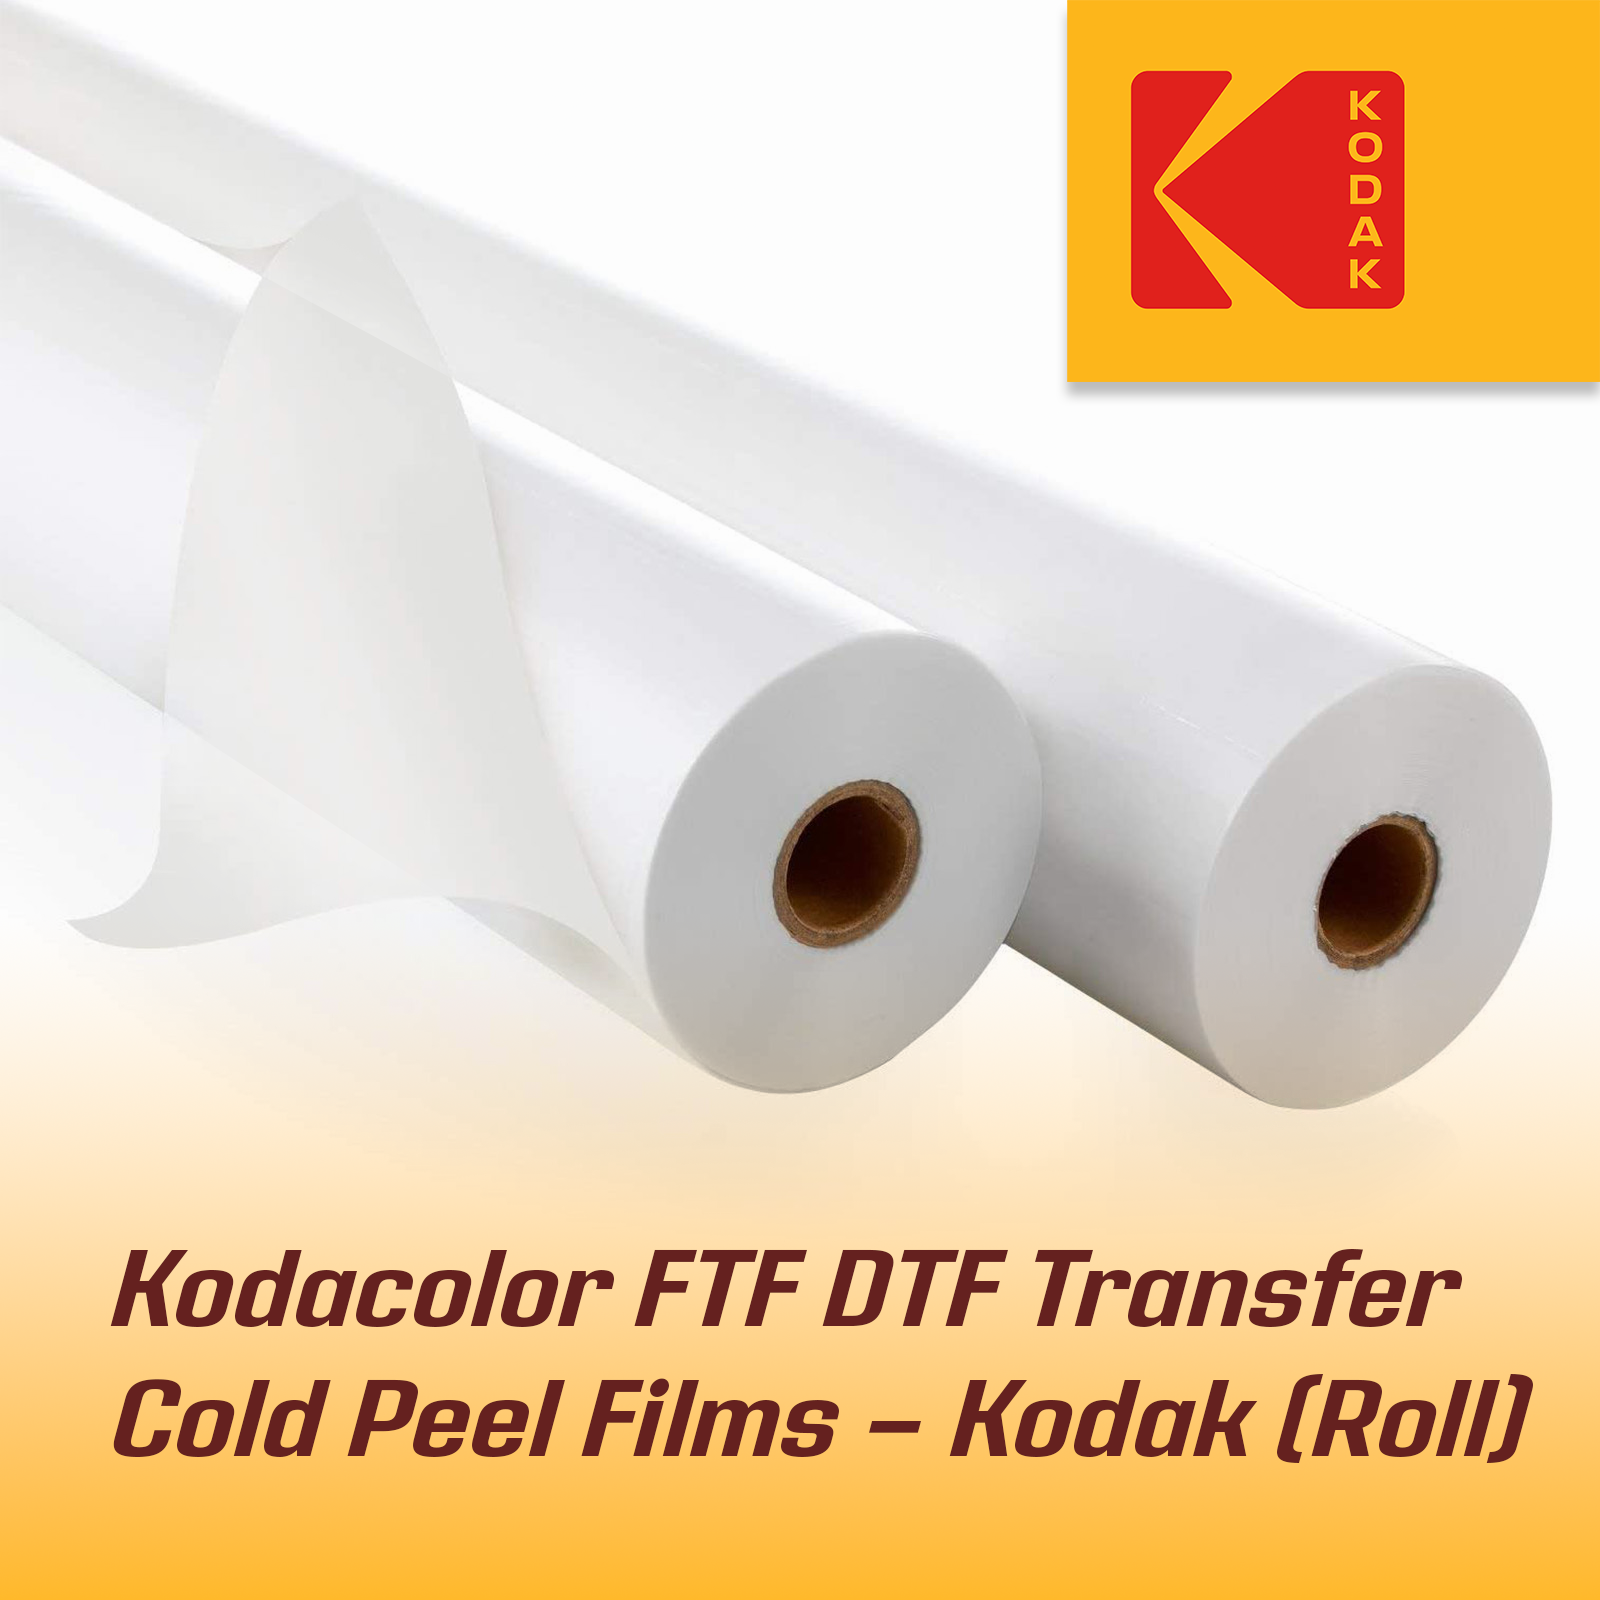 Kodak Best A3+ Cold Peel DTF Films on Sale